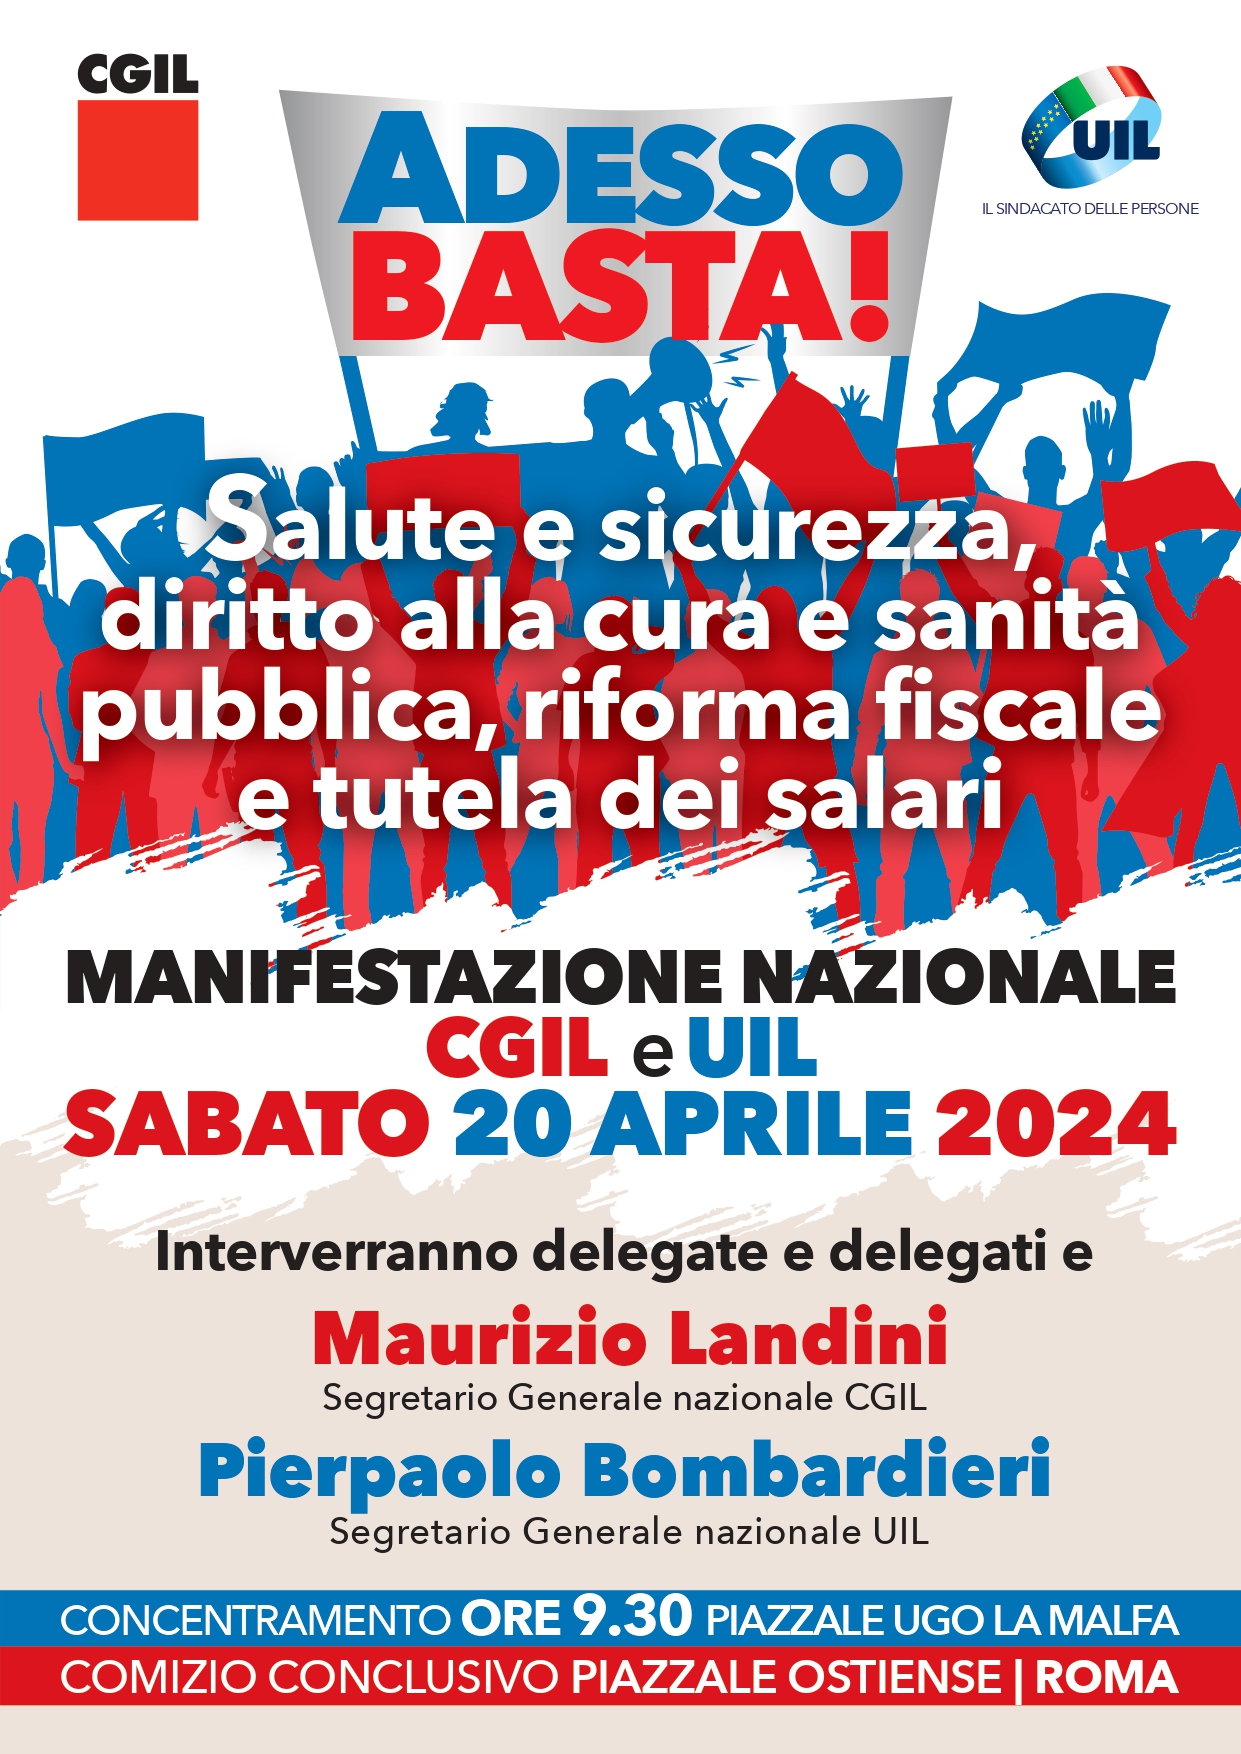 20/04, CGIL e UIL in manifestazione nazionale a Roma su salute e sicurezza, diritto alla cura e sanità pubblica, riforma fiscale e tutela dei salari